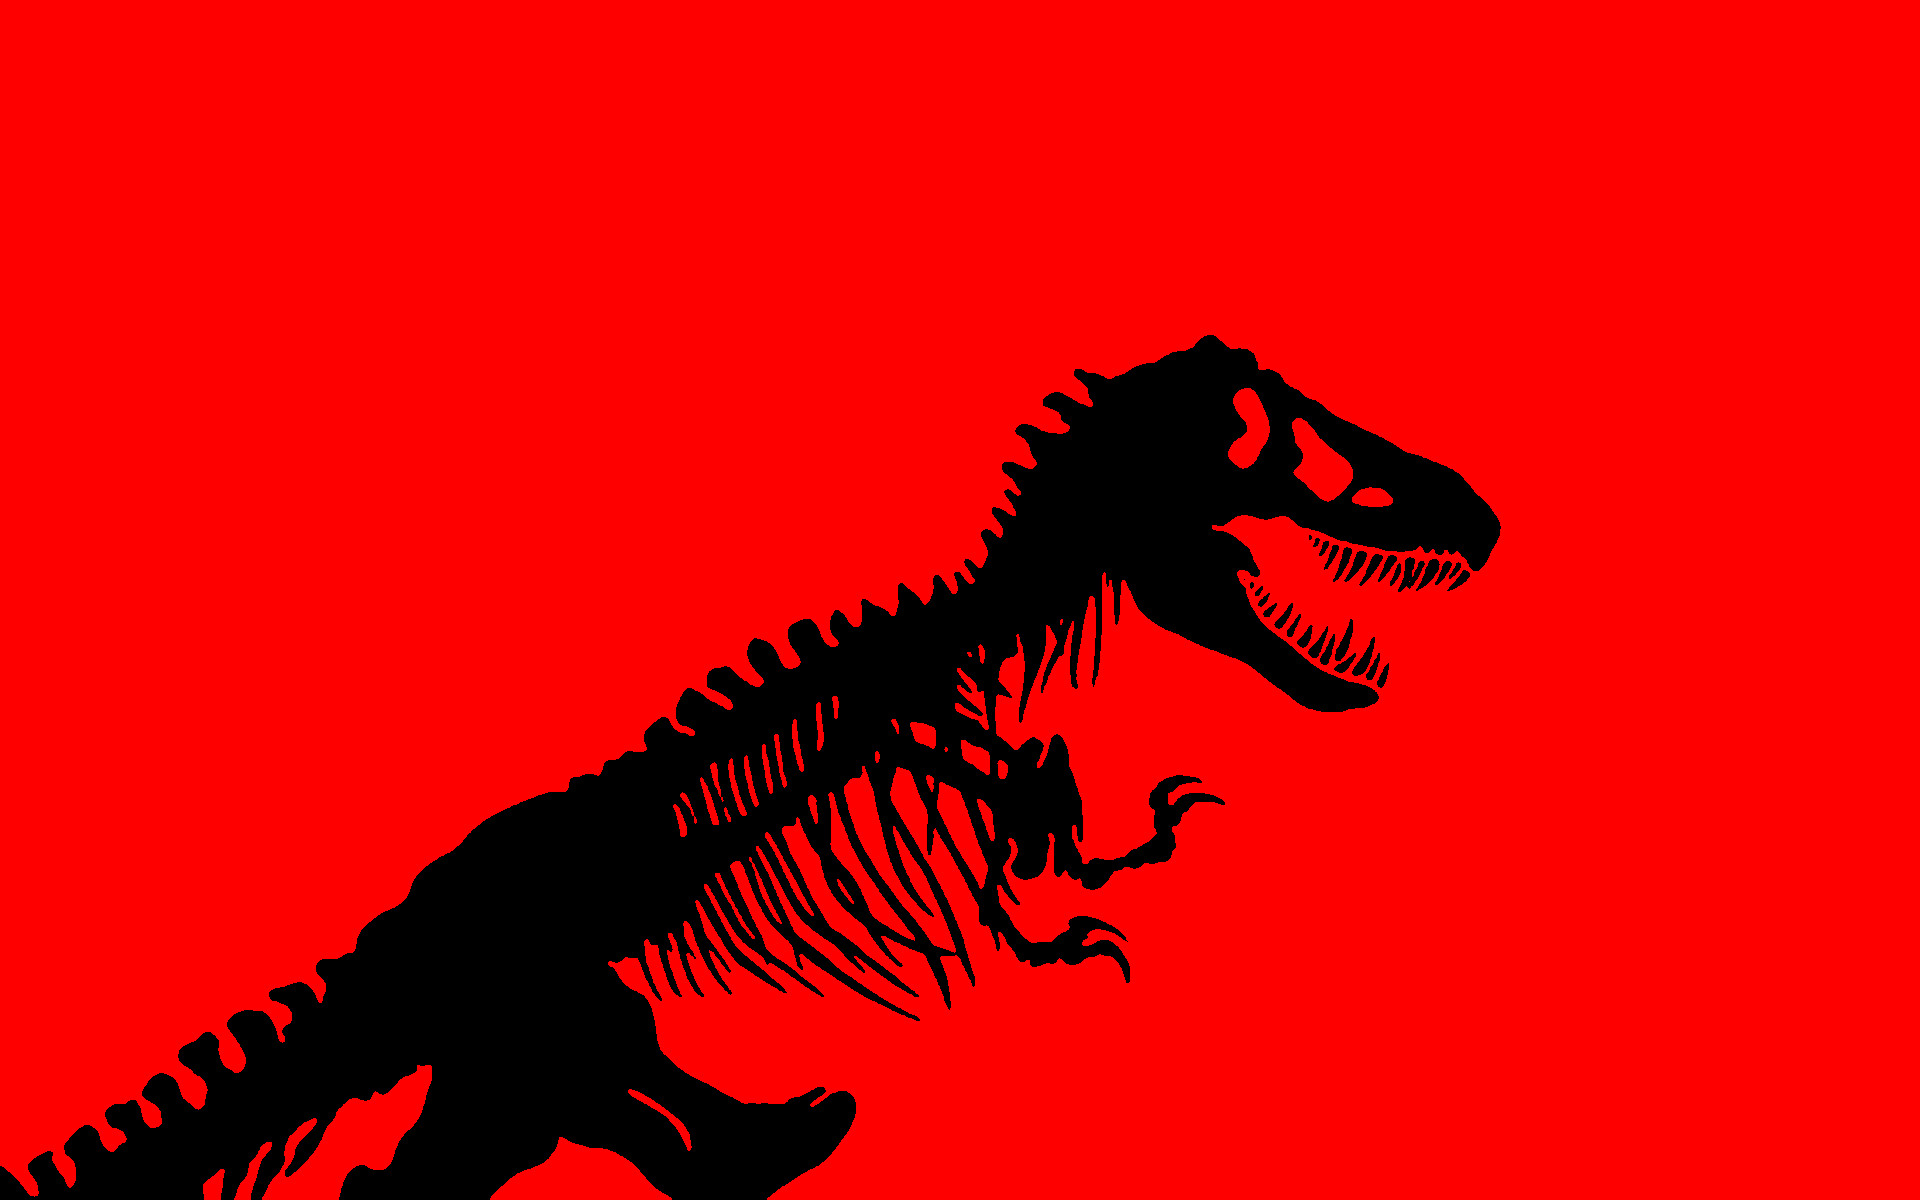 Jurassic Park Dinosaurs High Resolution Live Wallpaper Dsc577577 Screenshot Hd Wallpapers 1920x1200